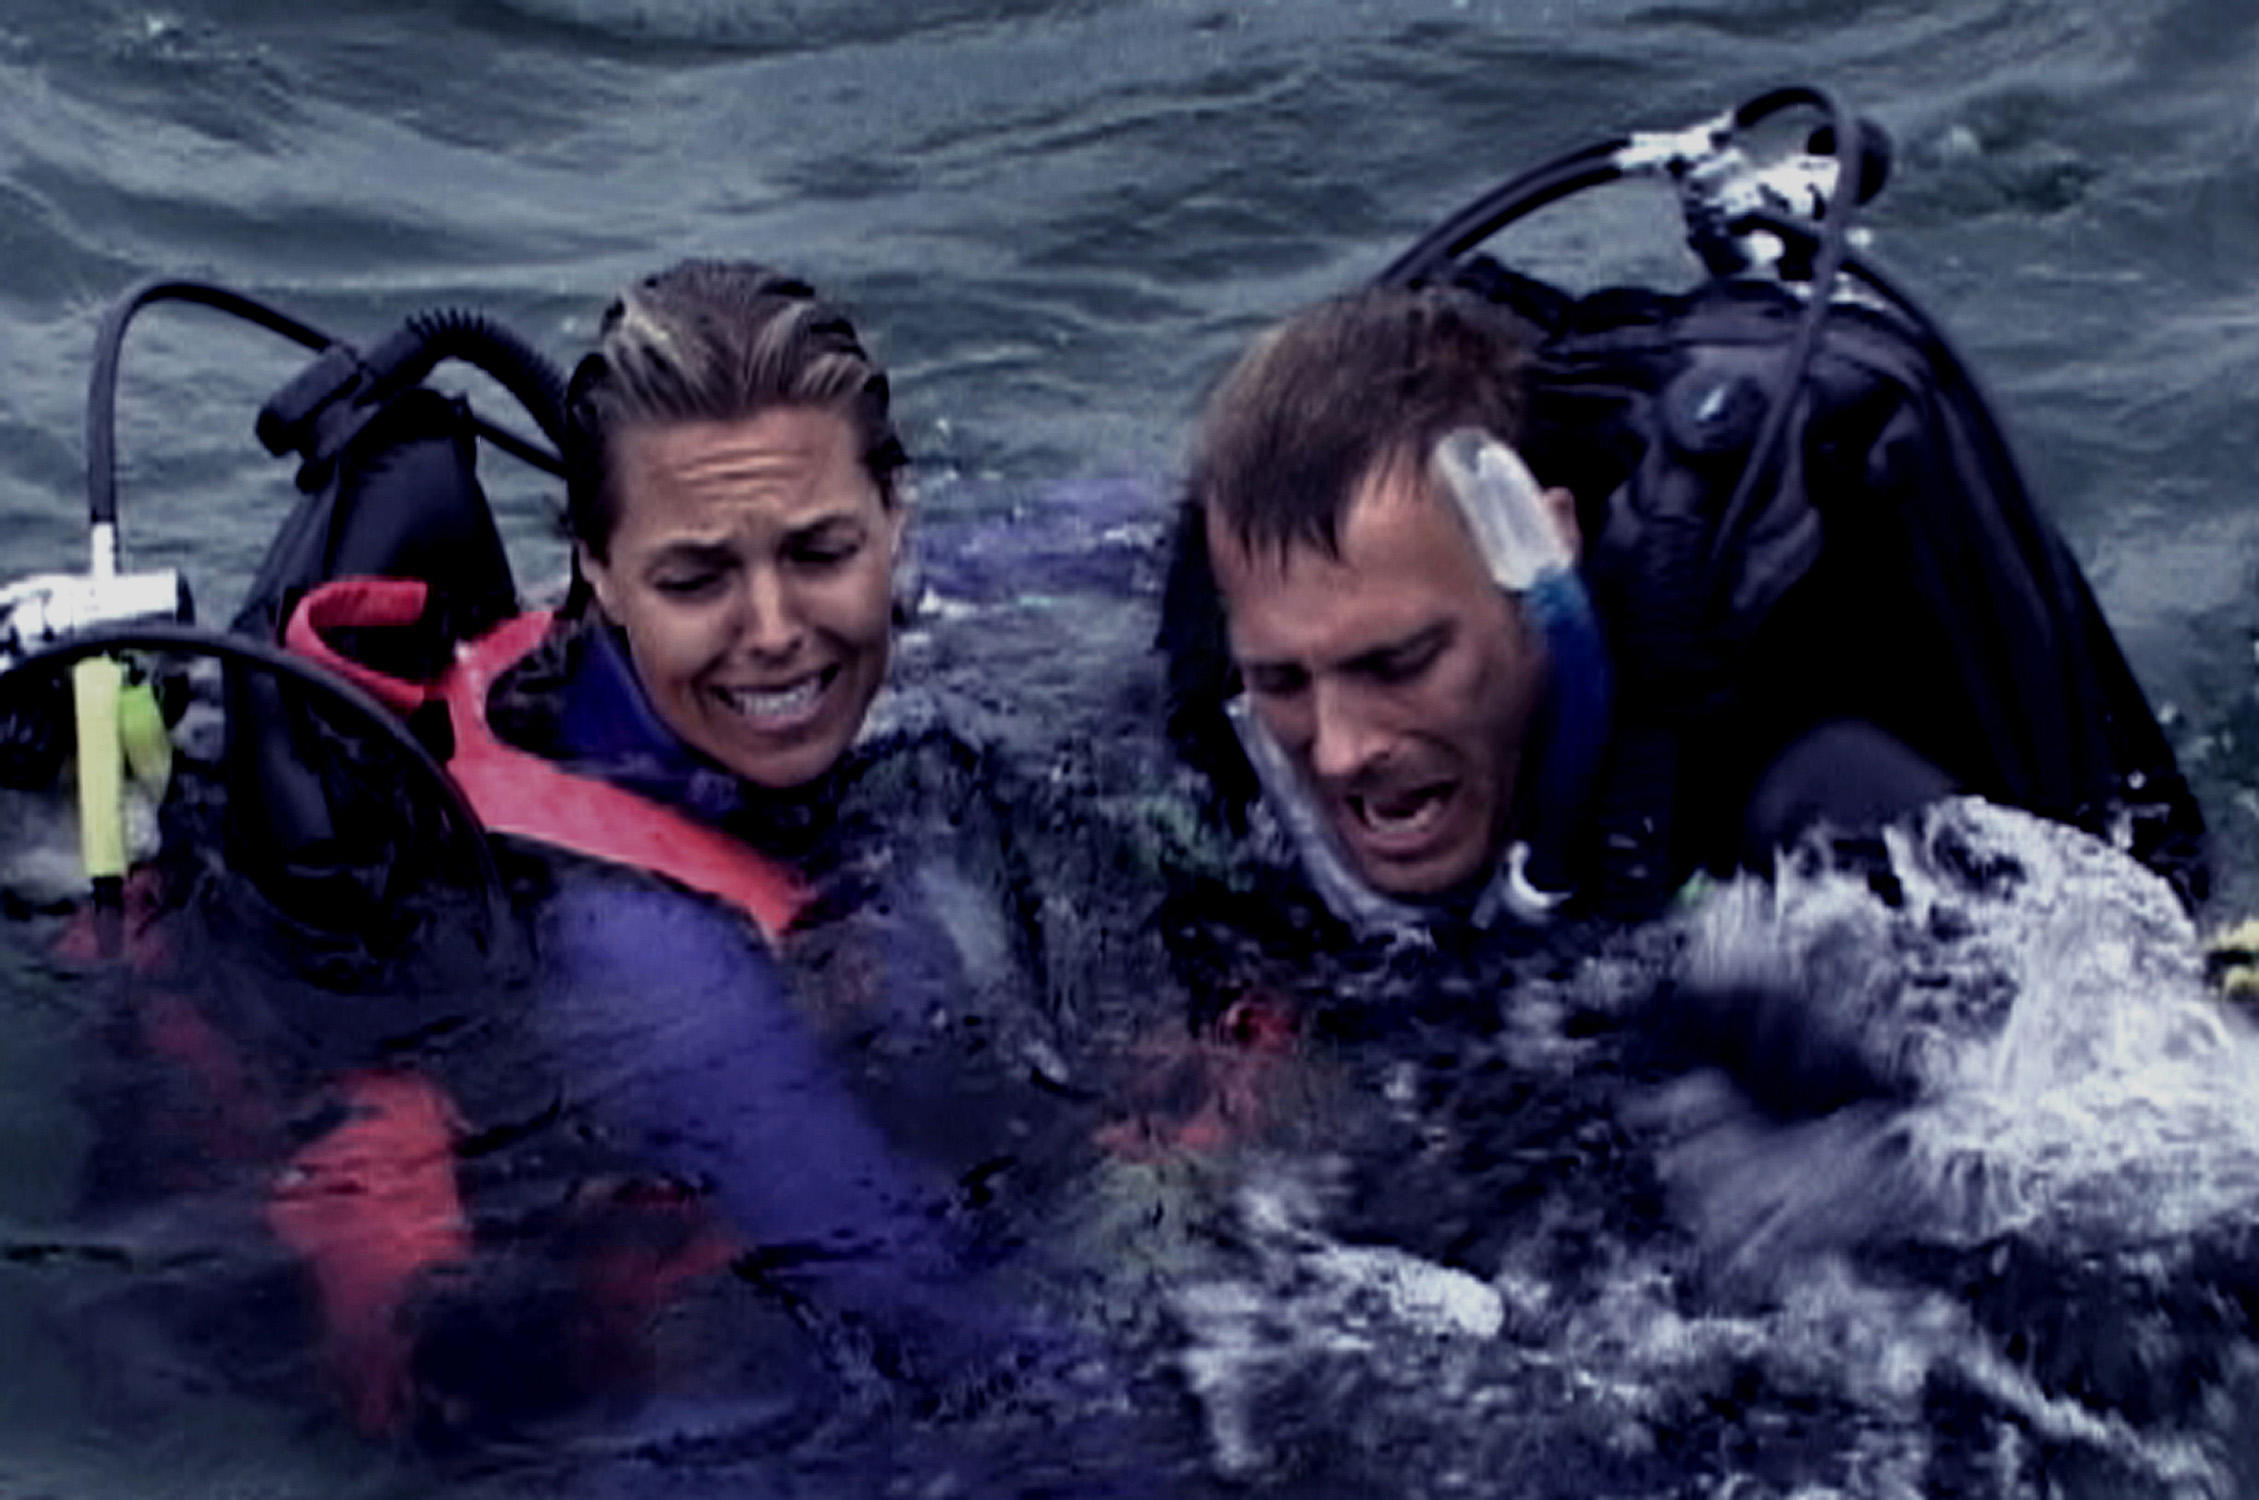 Blanchard Ryan como Susan y Daniel Travis como Daniel entra en pánico mientras un tiburón nada debajo de ellos en aguas abiertas